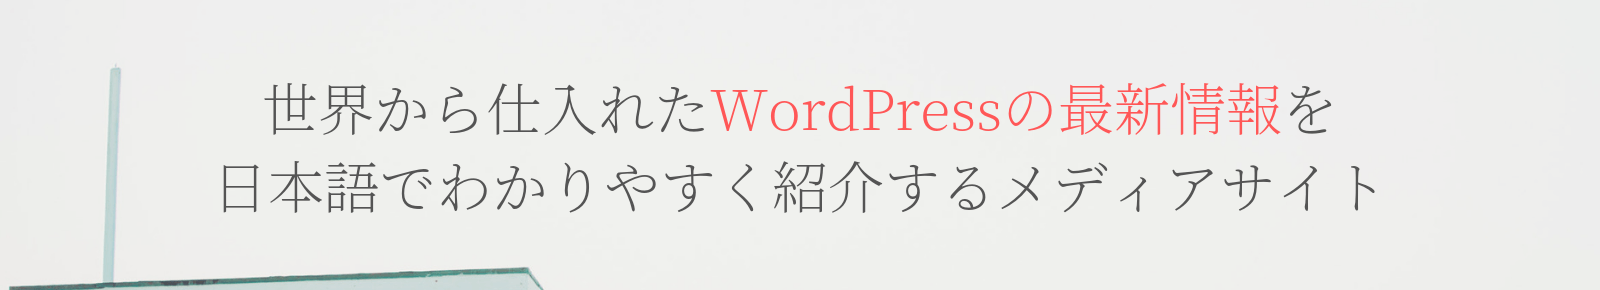 世界から仕入れたWordPressの最新情報を日本語でわかりやすく紹介するメディアサイト